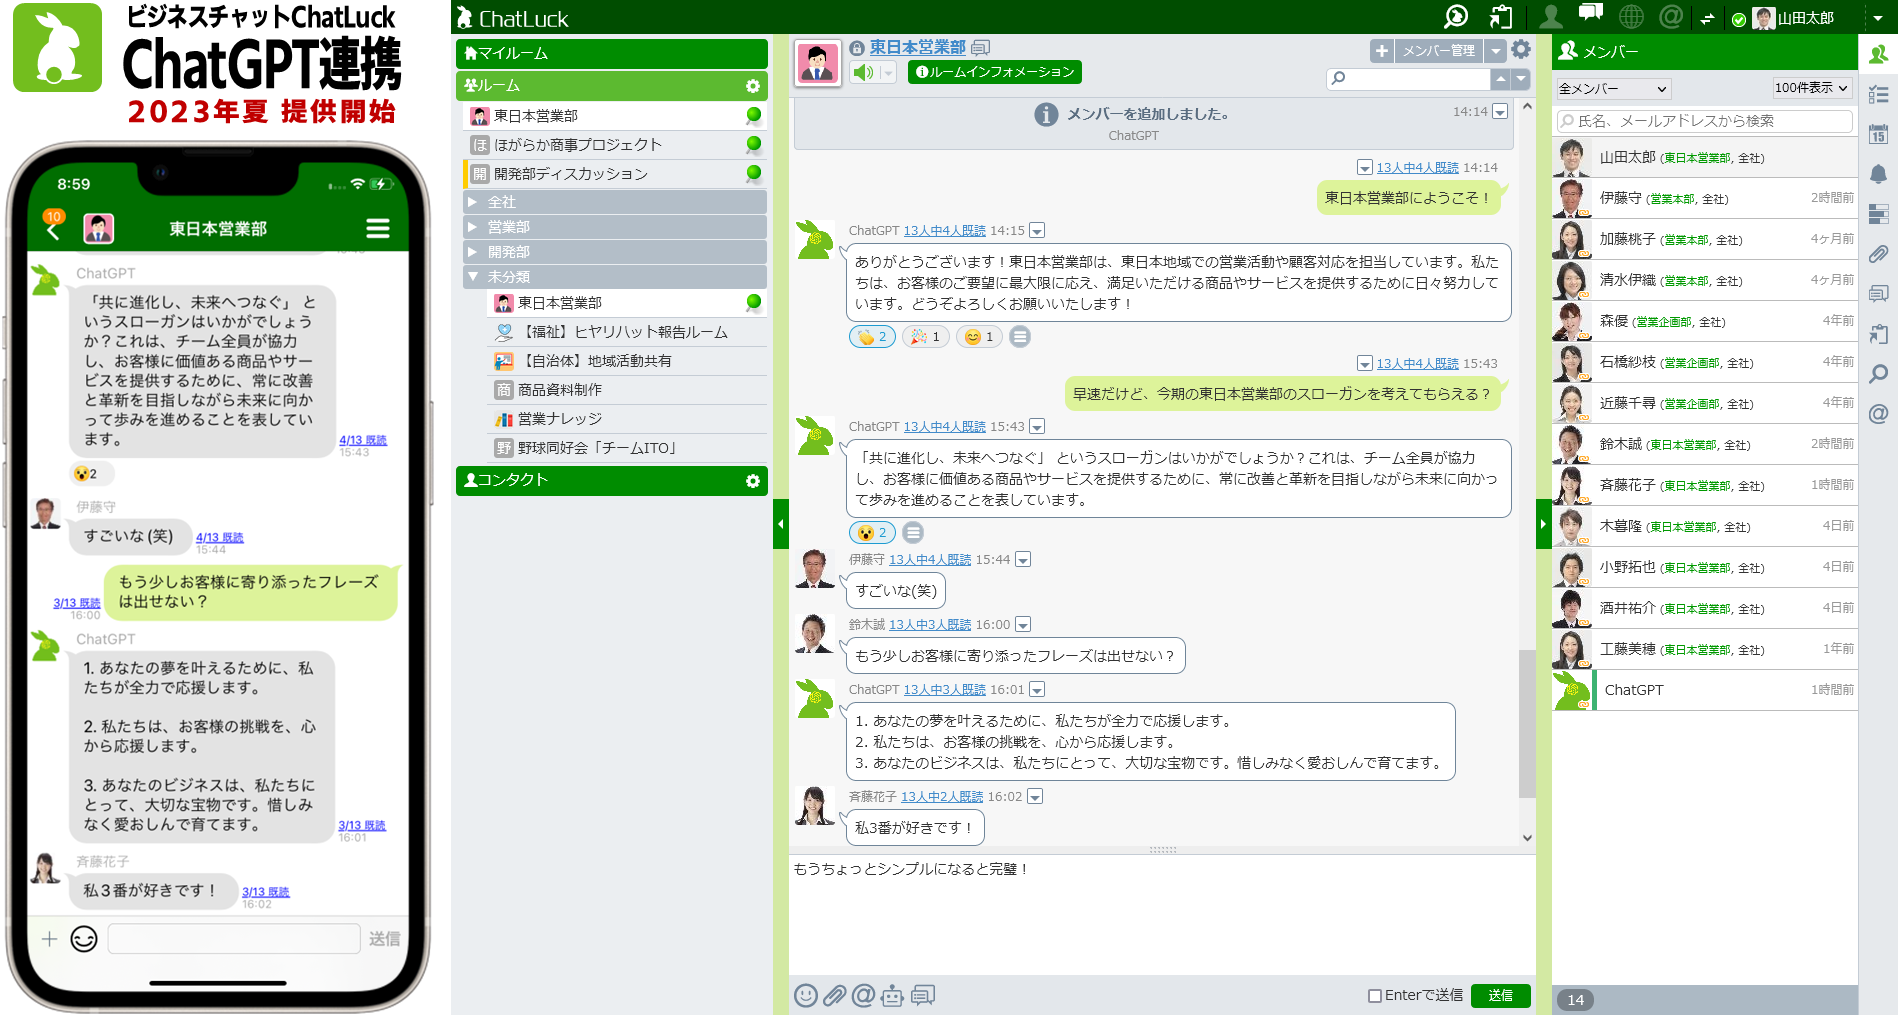 ネオジャパン、『ChatGPT』とのセキュアな連携で「AIとの協働」を実現するビジネスチャット『ChatLuck』を2023年夏に提供開始